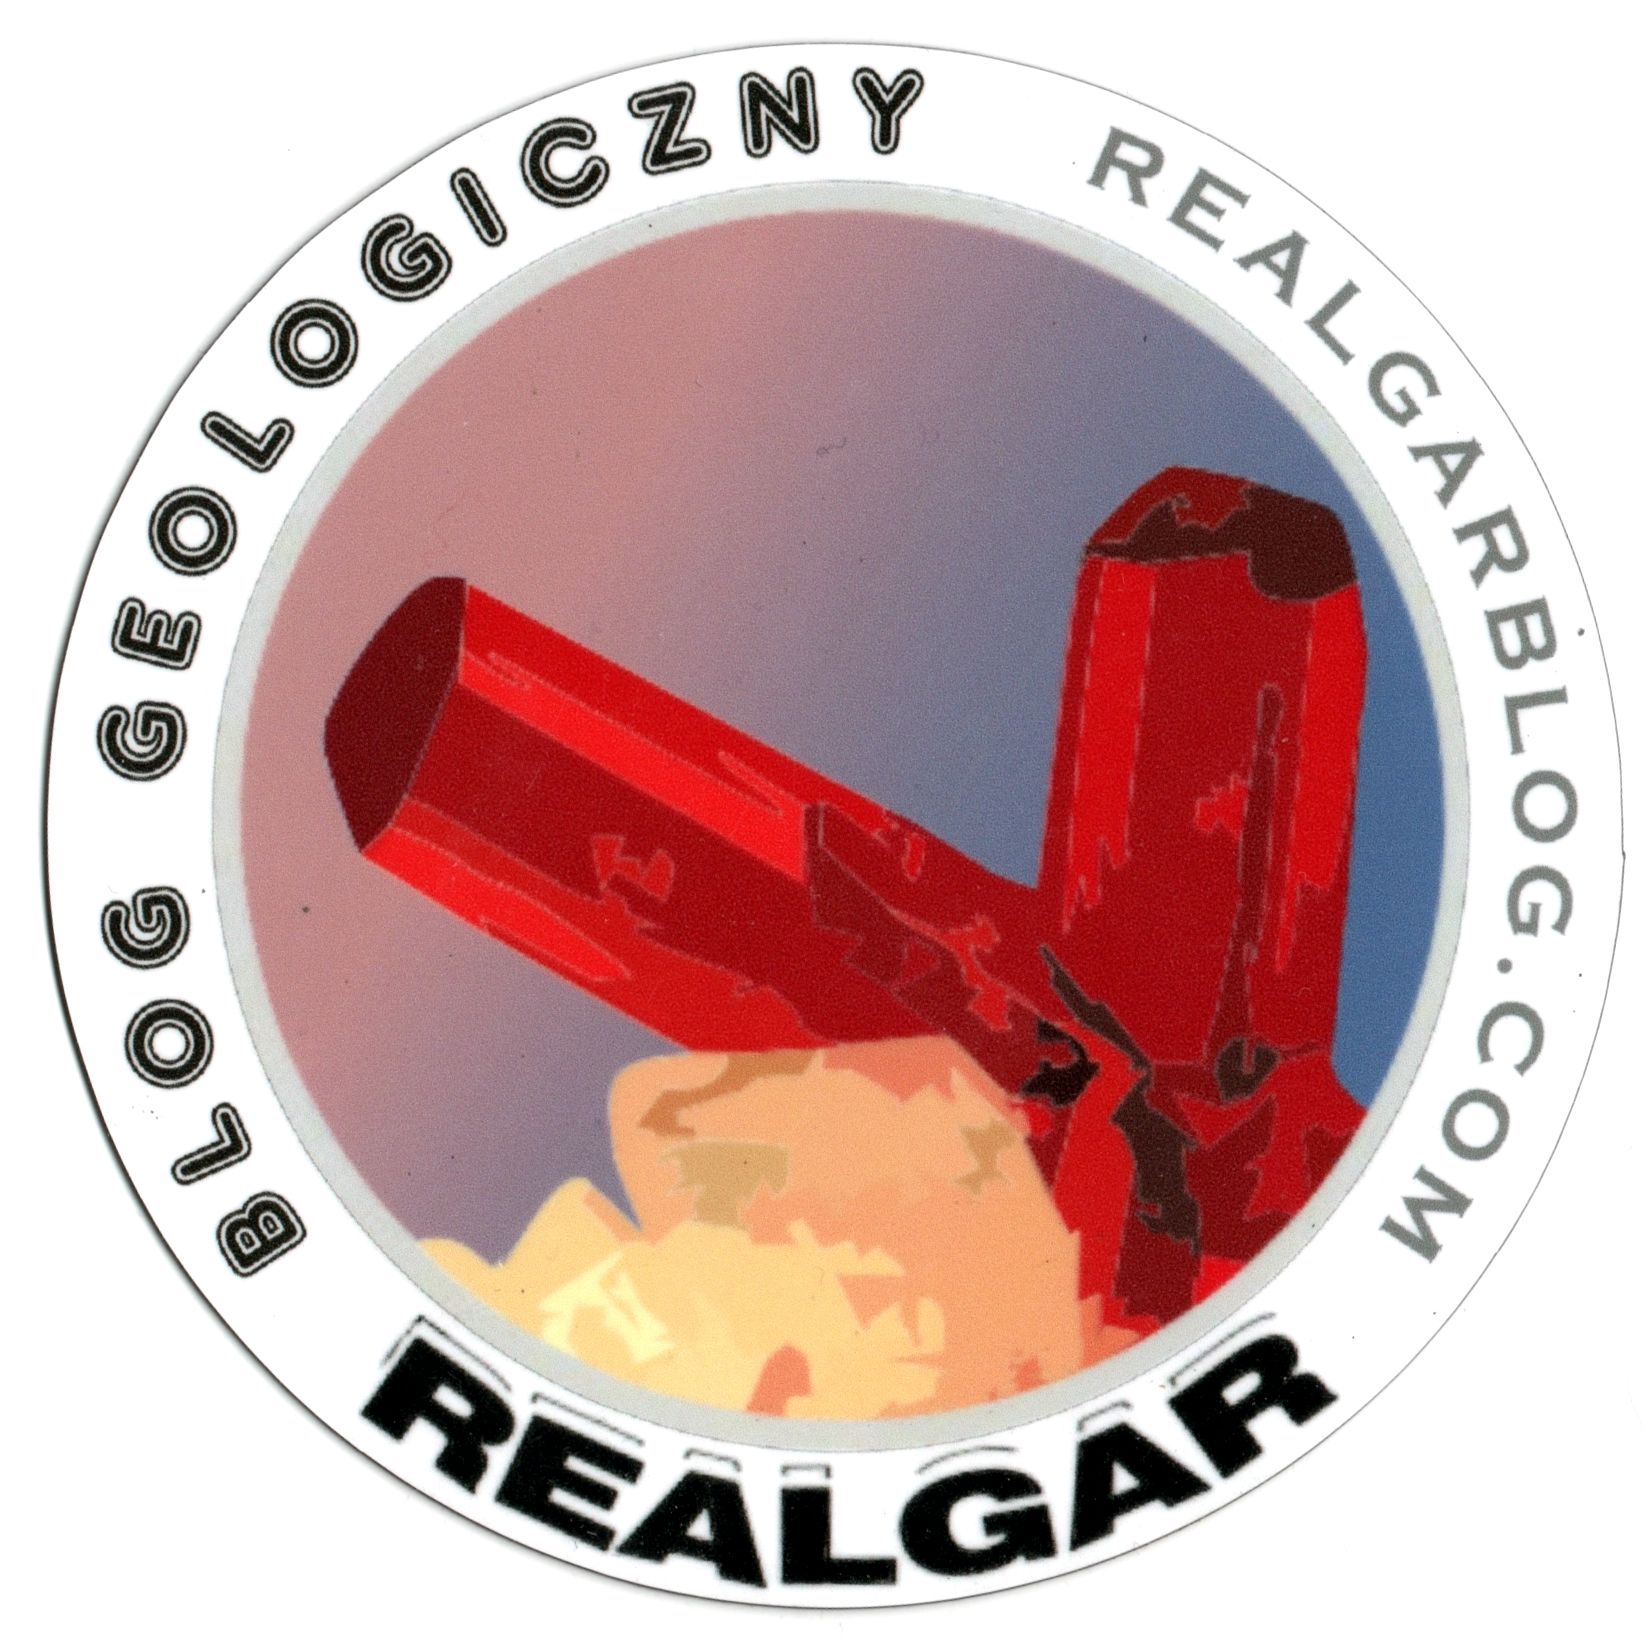 Blog Realgar